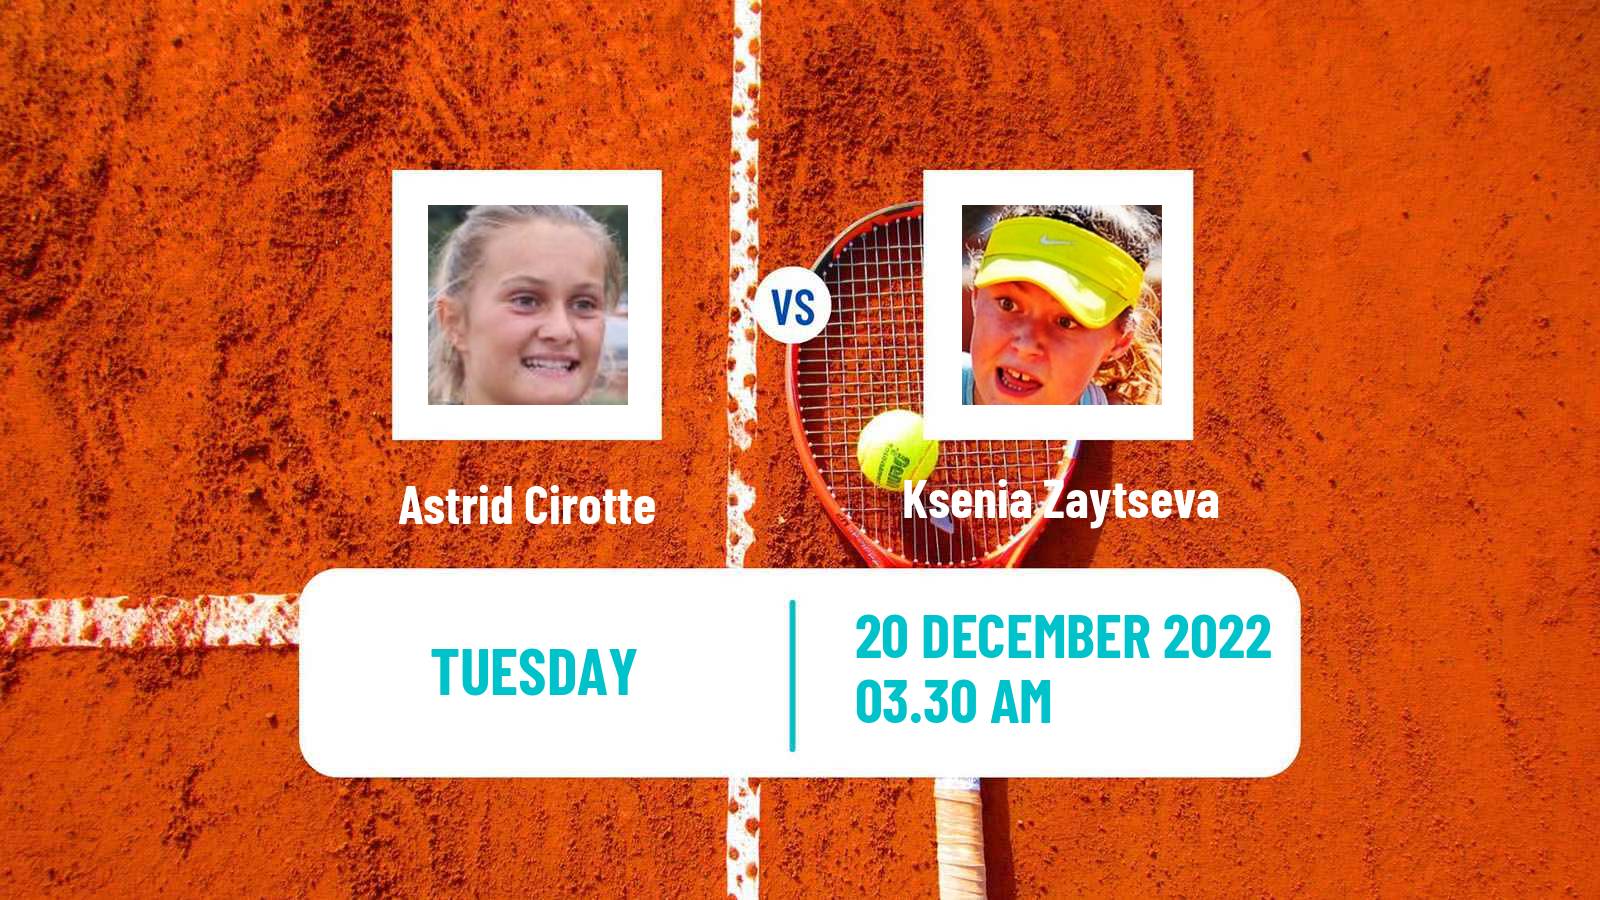 Tennis ITF Tournaments Astrid Cirotte - Ksenia Zaytseva